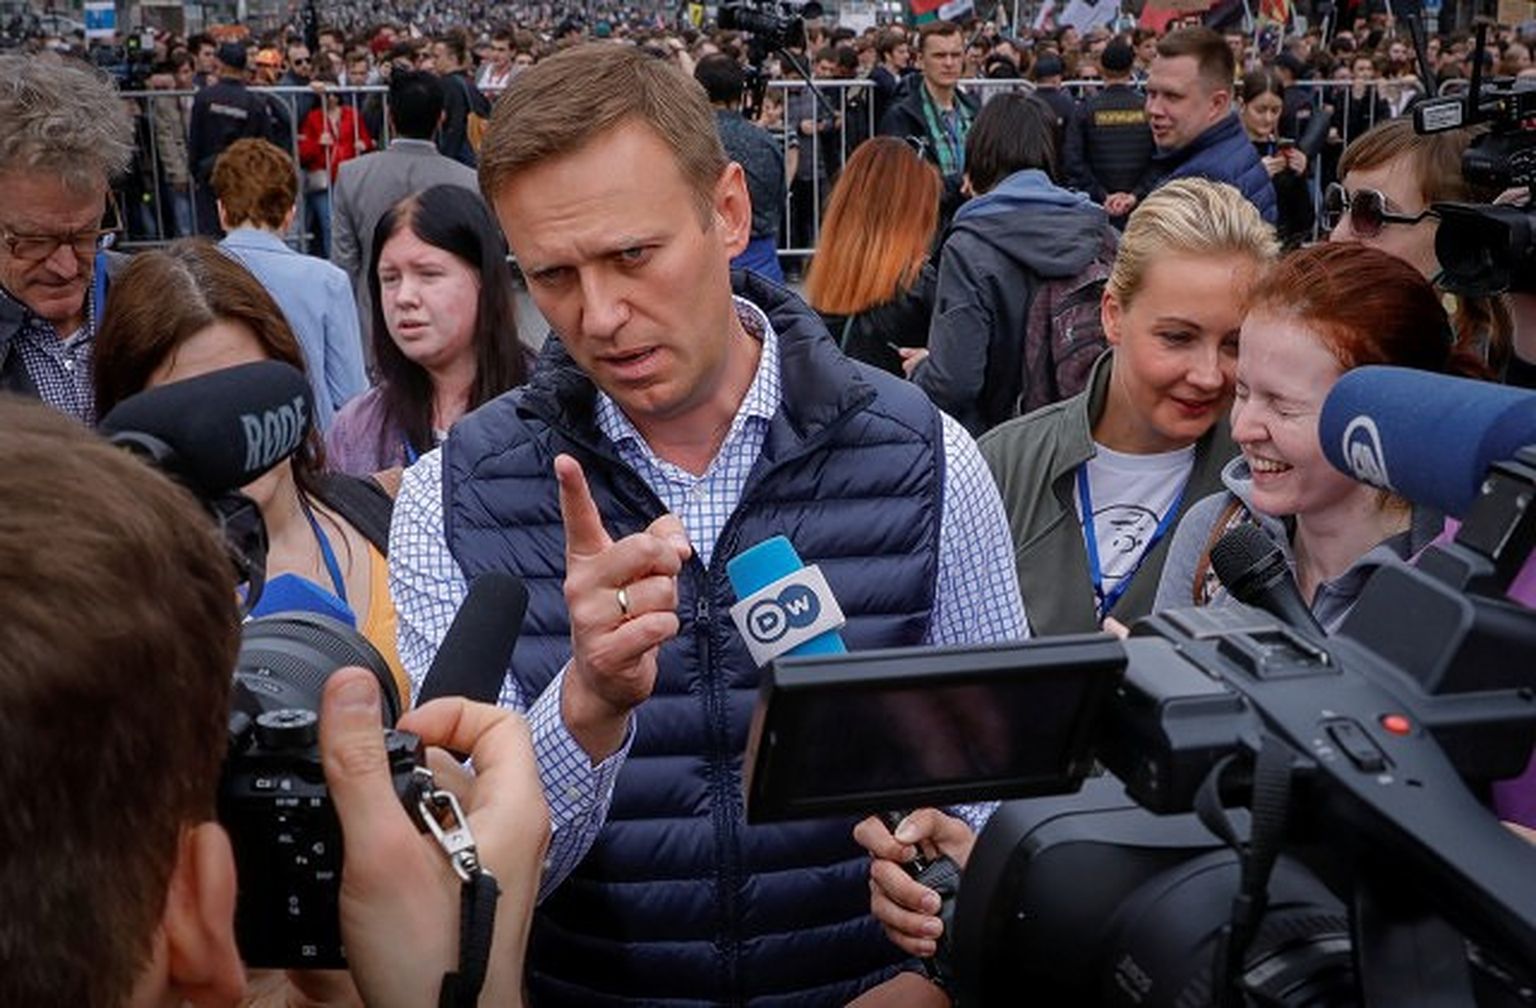 Krievijas opozīcijas līderis Aleksejs Navaļnijs protesta akcijā pret Telegram bloķēšanu